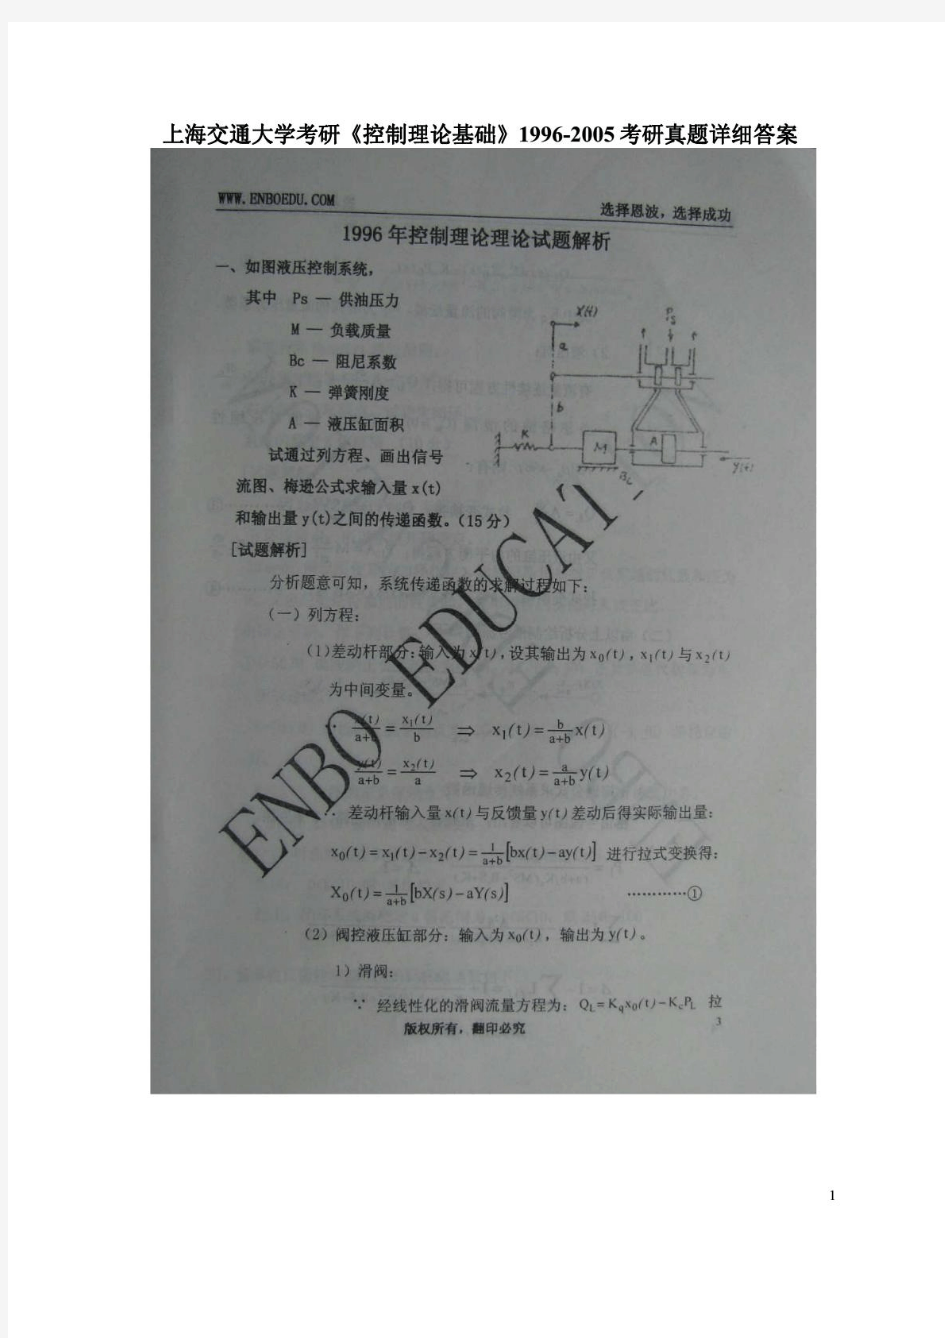 1996-2011年上海交大815控制理论基础考研试题